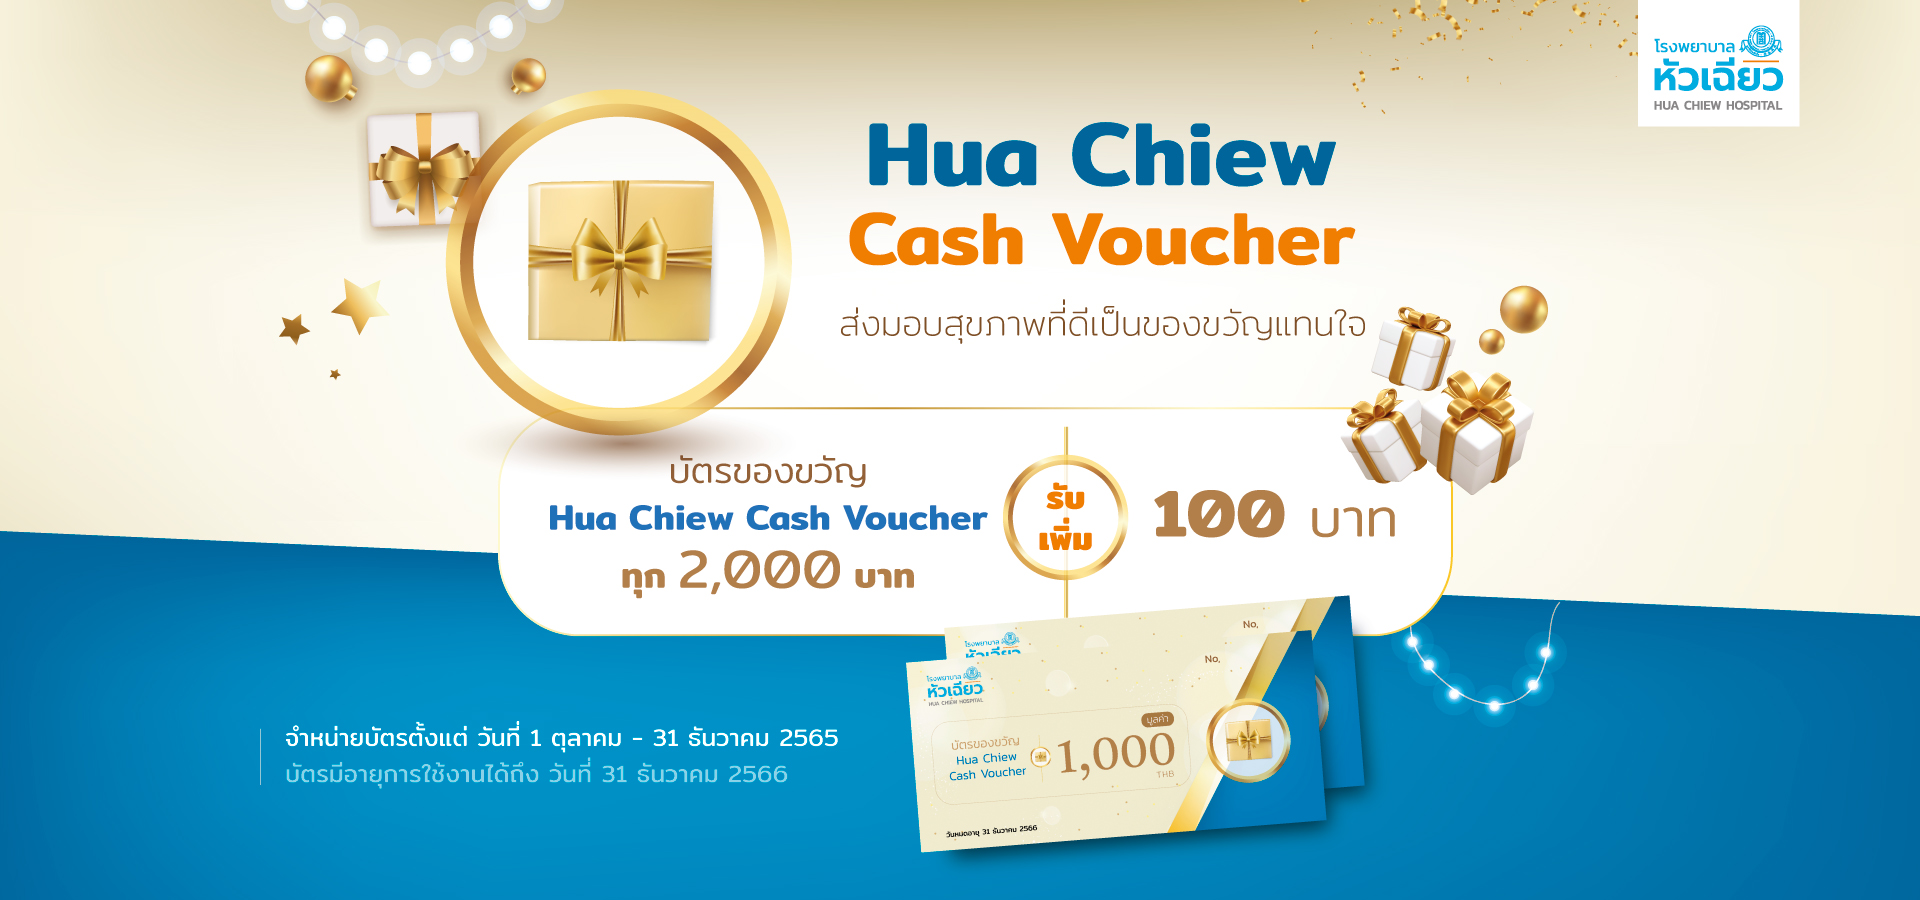 บัตรของขวัญ Hua Chiew Cash Voucher ส่งมอบสุขภาพที่ดี เป็นของขวัญแทนใจ
บัตรของขวัญแทนเงินสด ทุก 2,000 บาท รับเพิ่ม 100 บาท